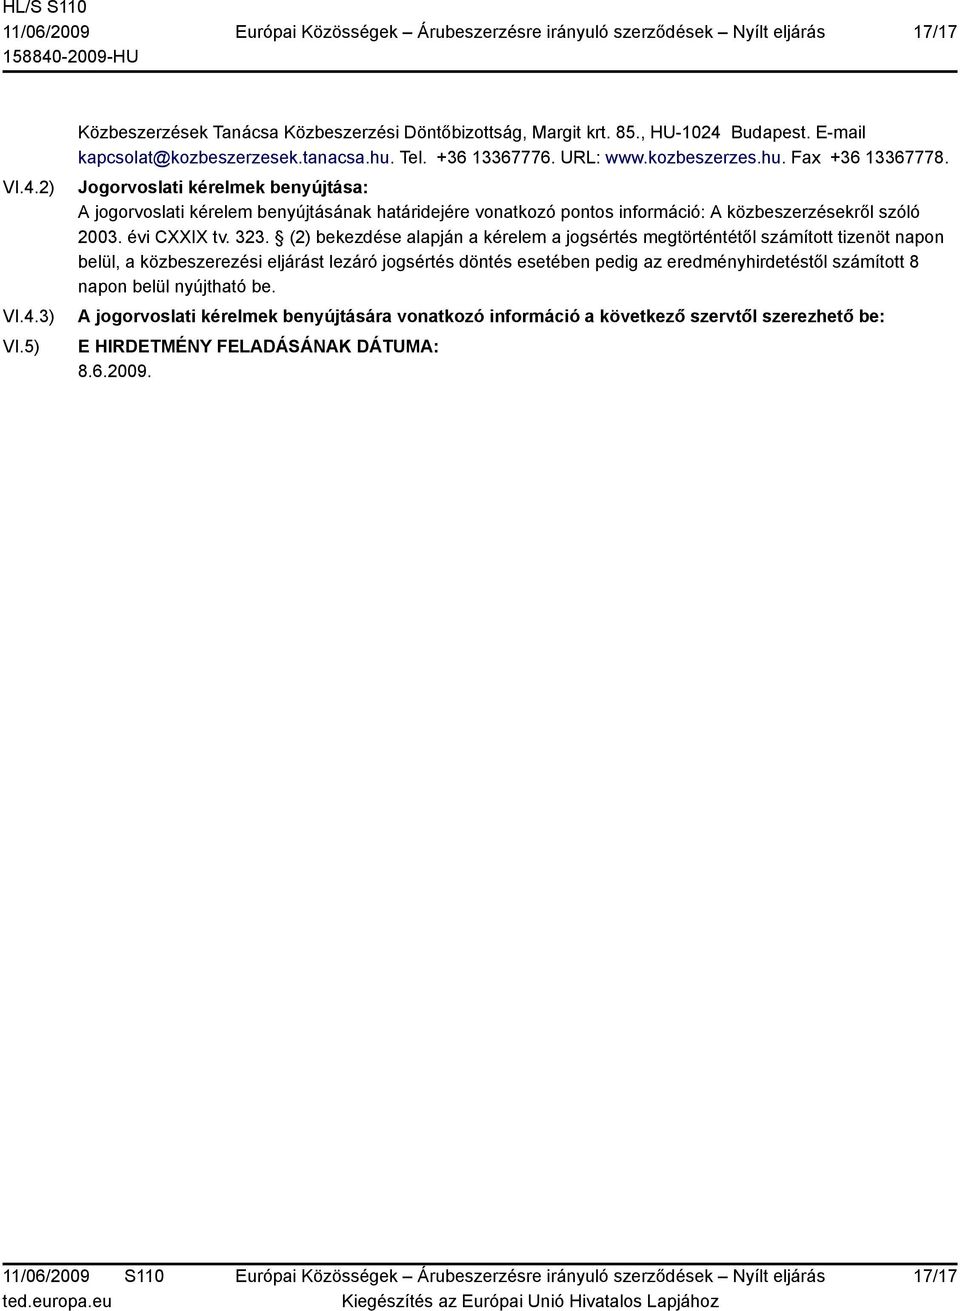 Jogorvoslati kérelmek benyújtása: A jogorvoslati kérelem benyújtásának határidejére vonatkozó pontos információ: A közbeszerzésekről szóló 2003. évi CXXIX tv. 323.